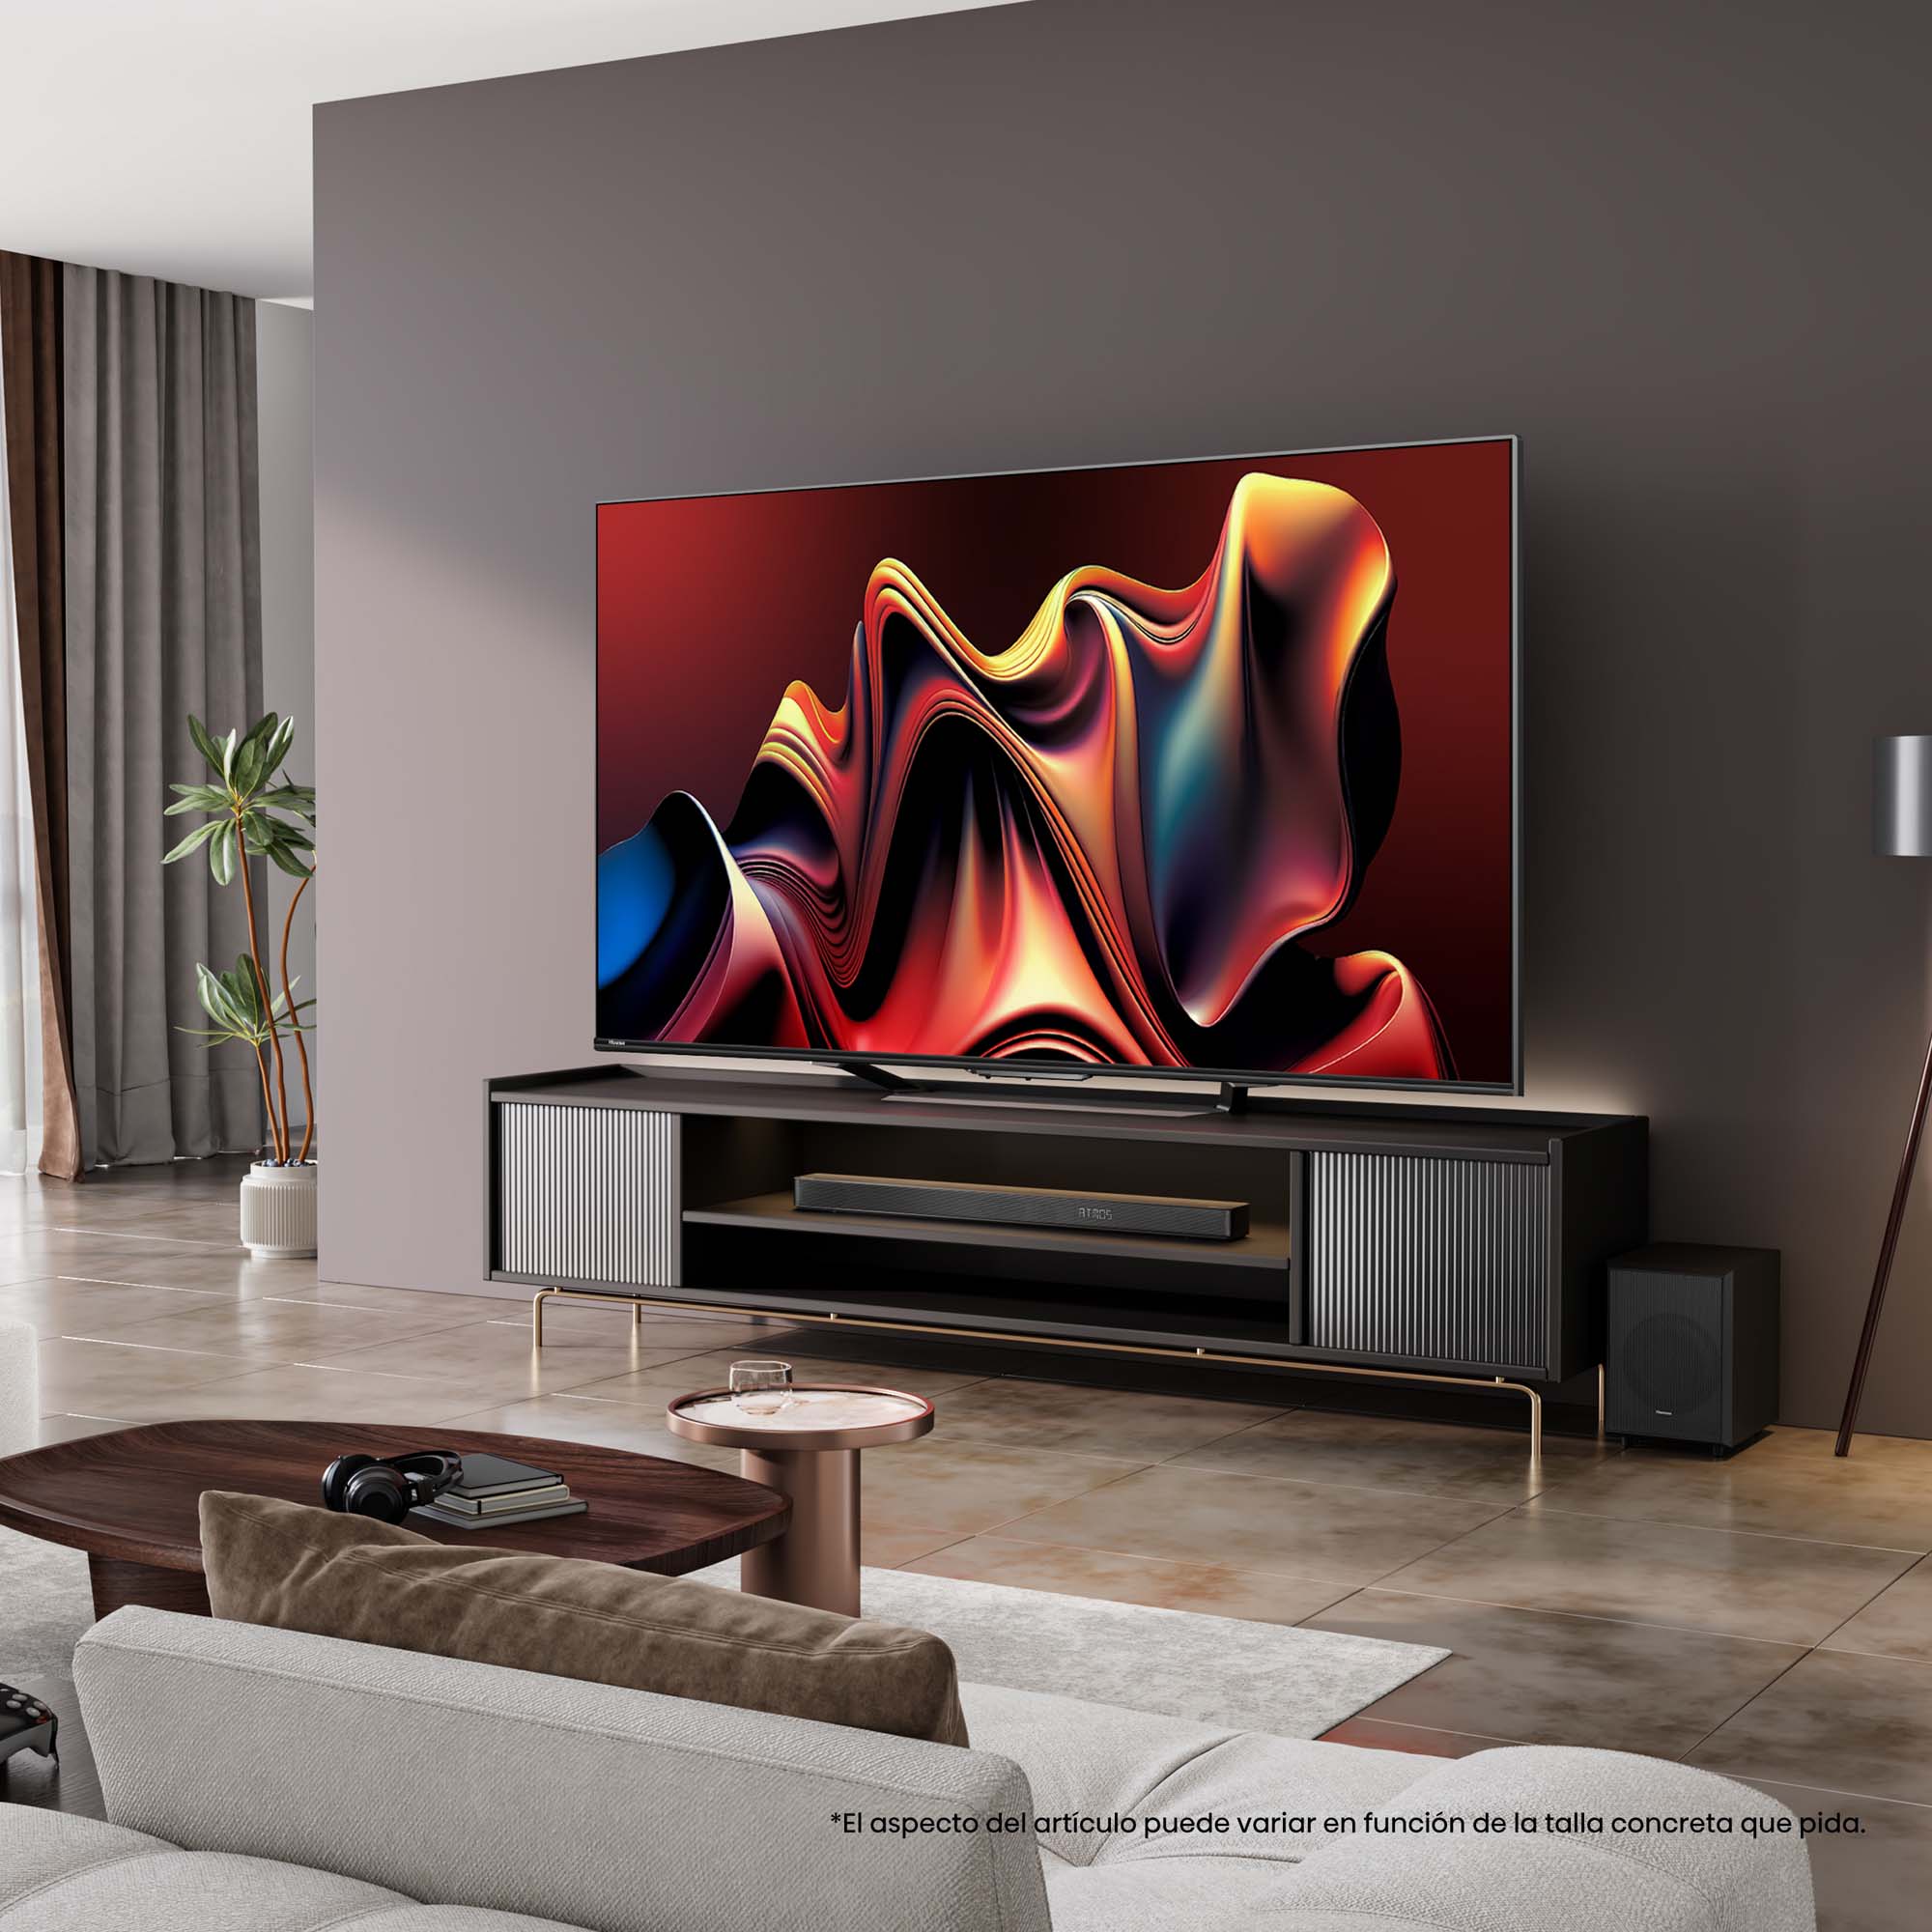 Hisense - Mini-LED TV U7NQ con Quantum Dot Colour